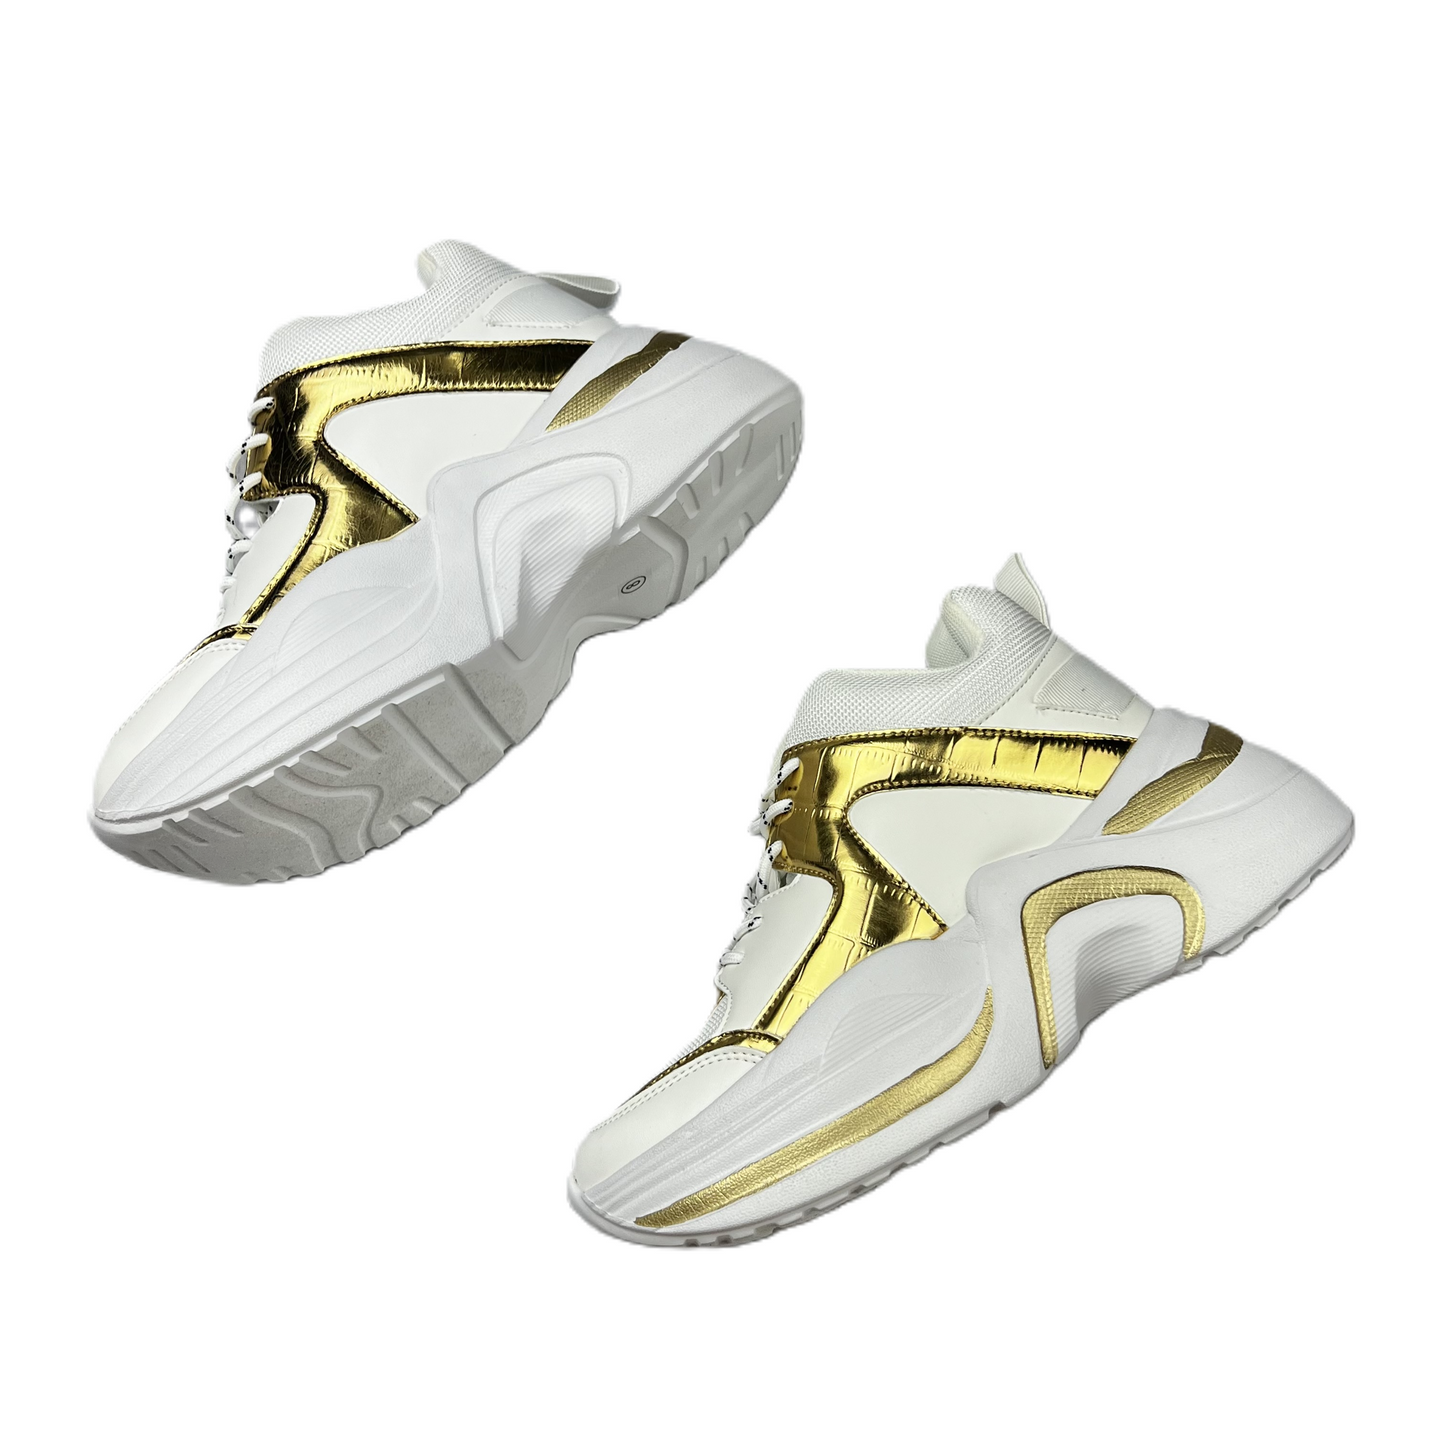 Gold & White Shoes Sneakers Platform By Fashion Nova, Size: 8